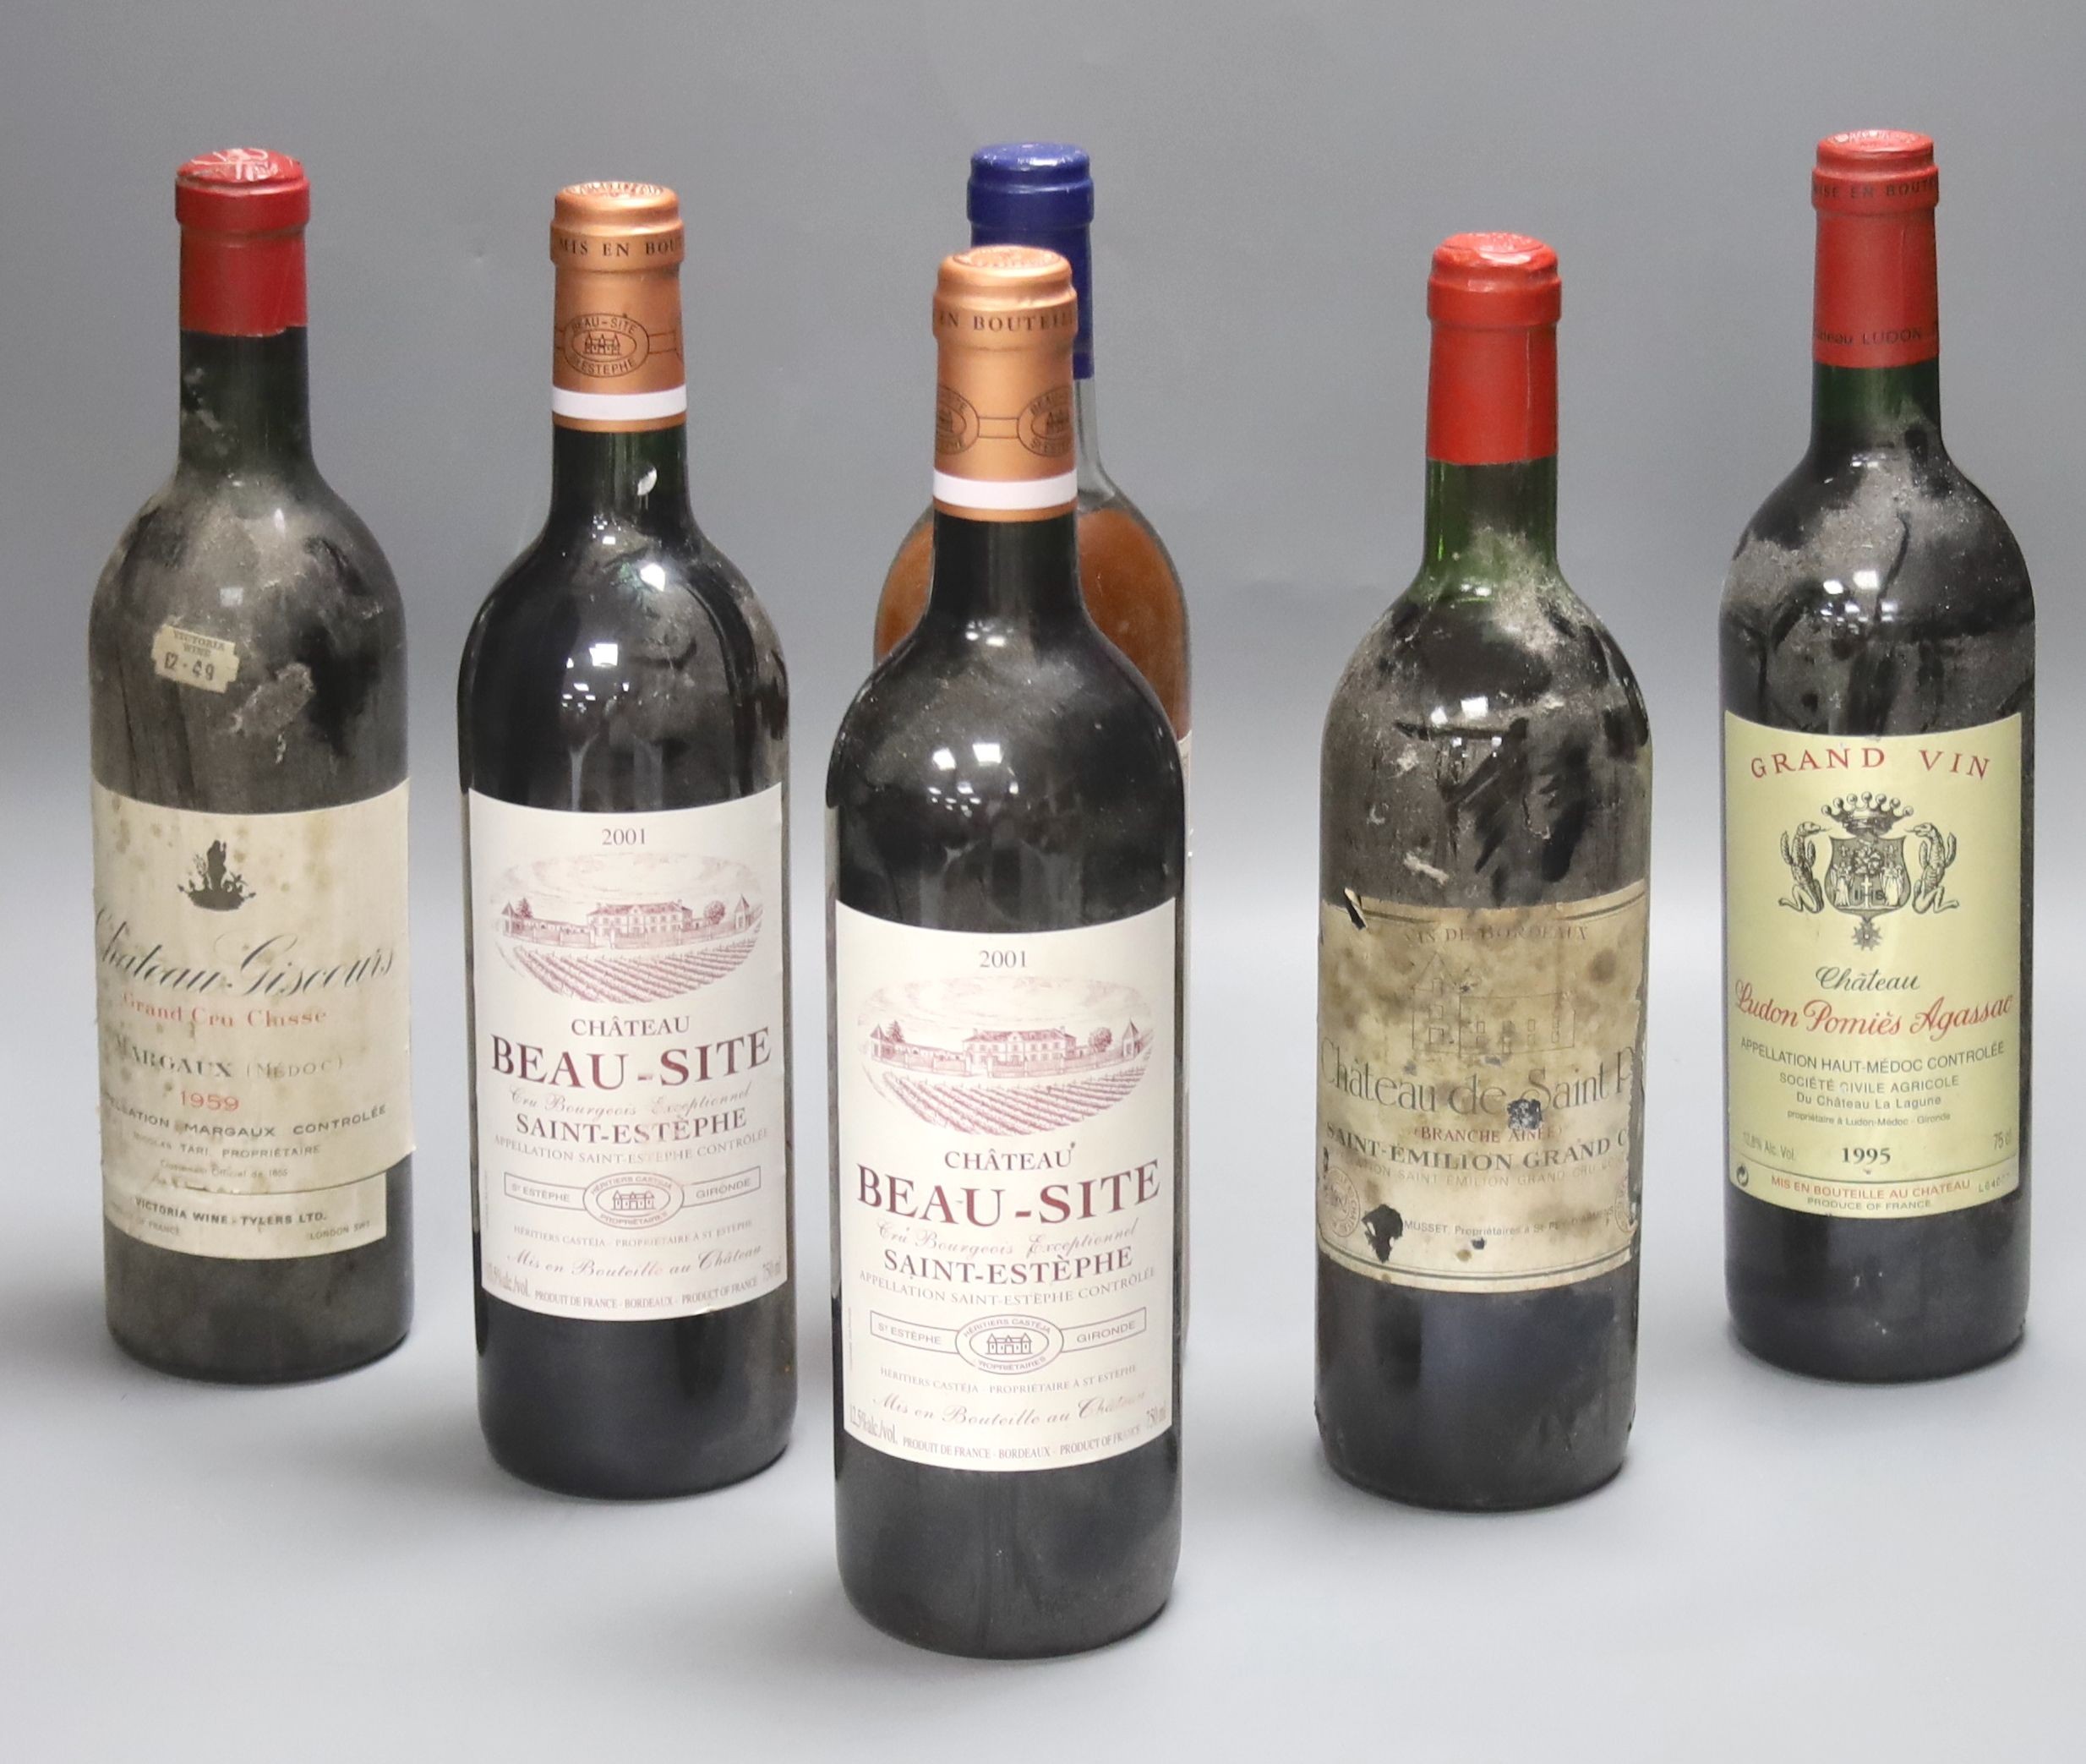 Five red Bordeaux wines including two Chateau Beau Site, Saint Estephe, 2001, one Chateau de Saint